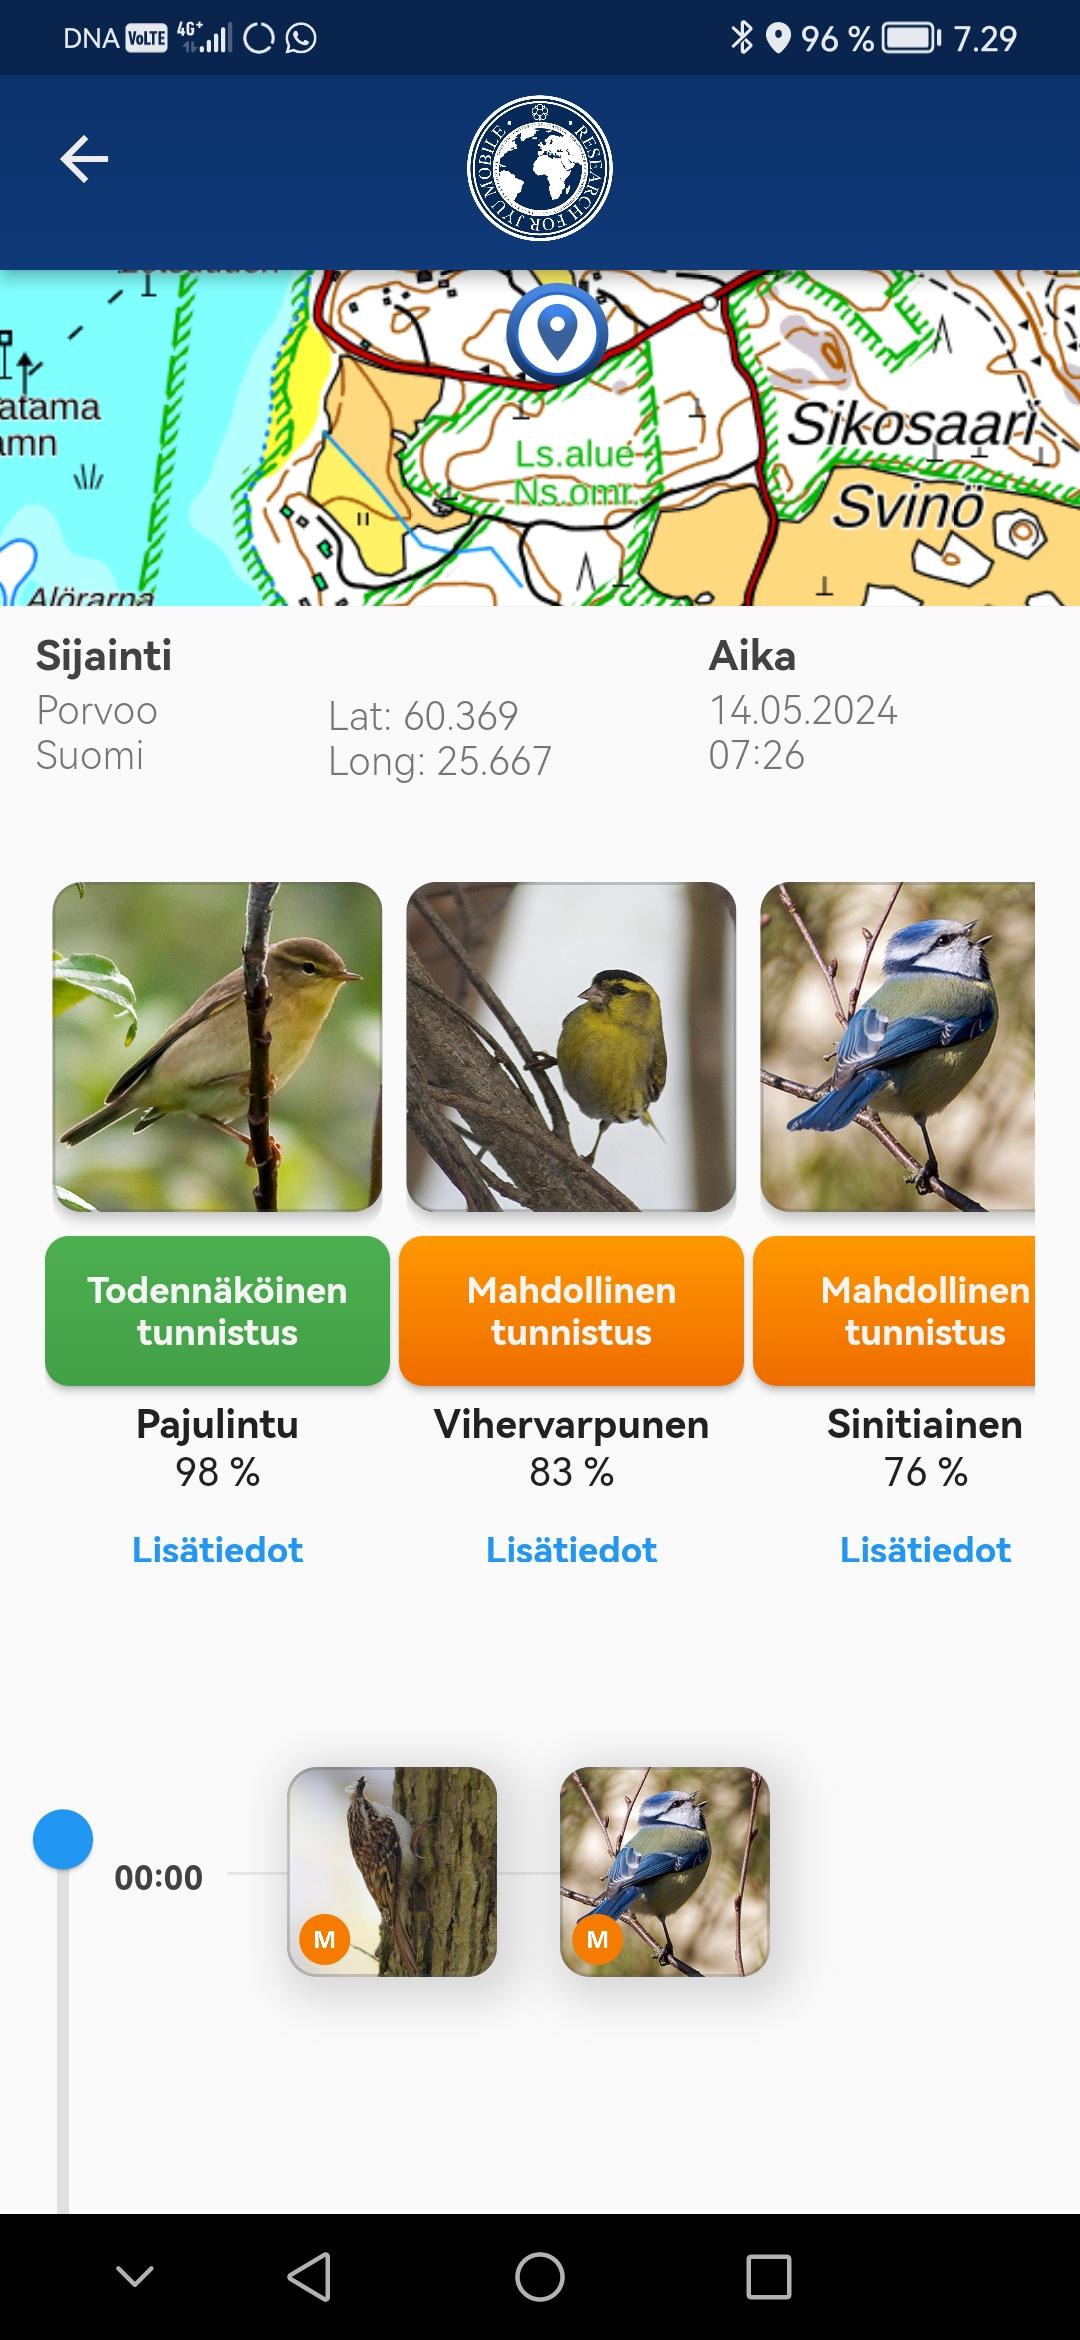 Näkymä Muuttolintujen kevät -sovelluksesta - siinä muun muassa kartta, tunnistettuja lintuja tietoineen.